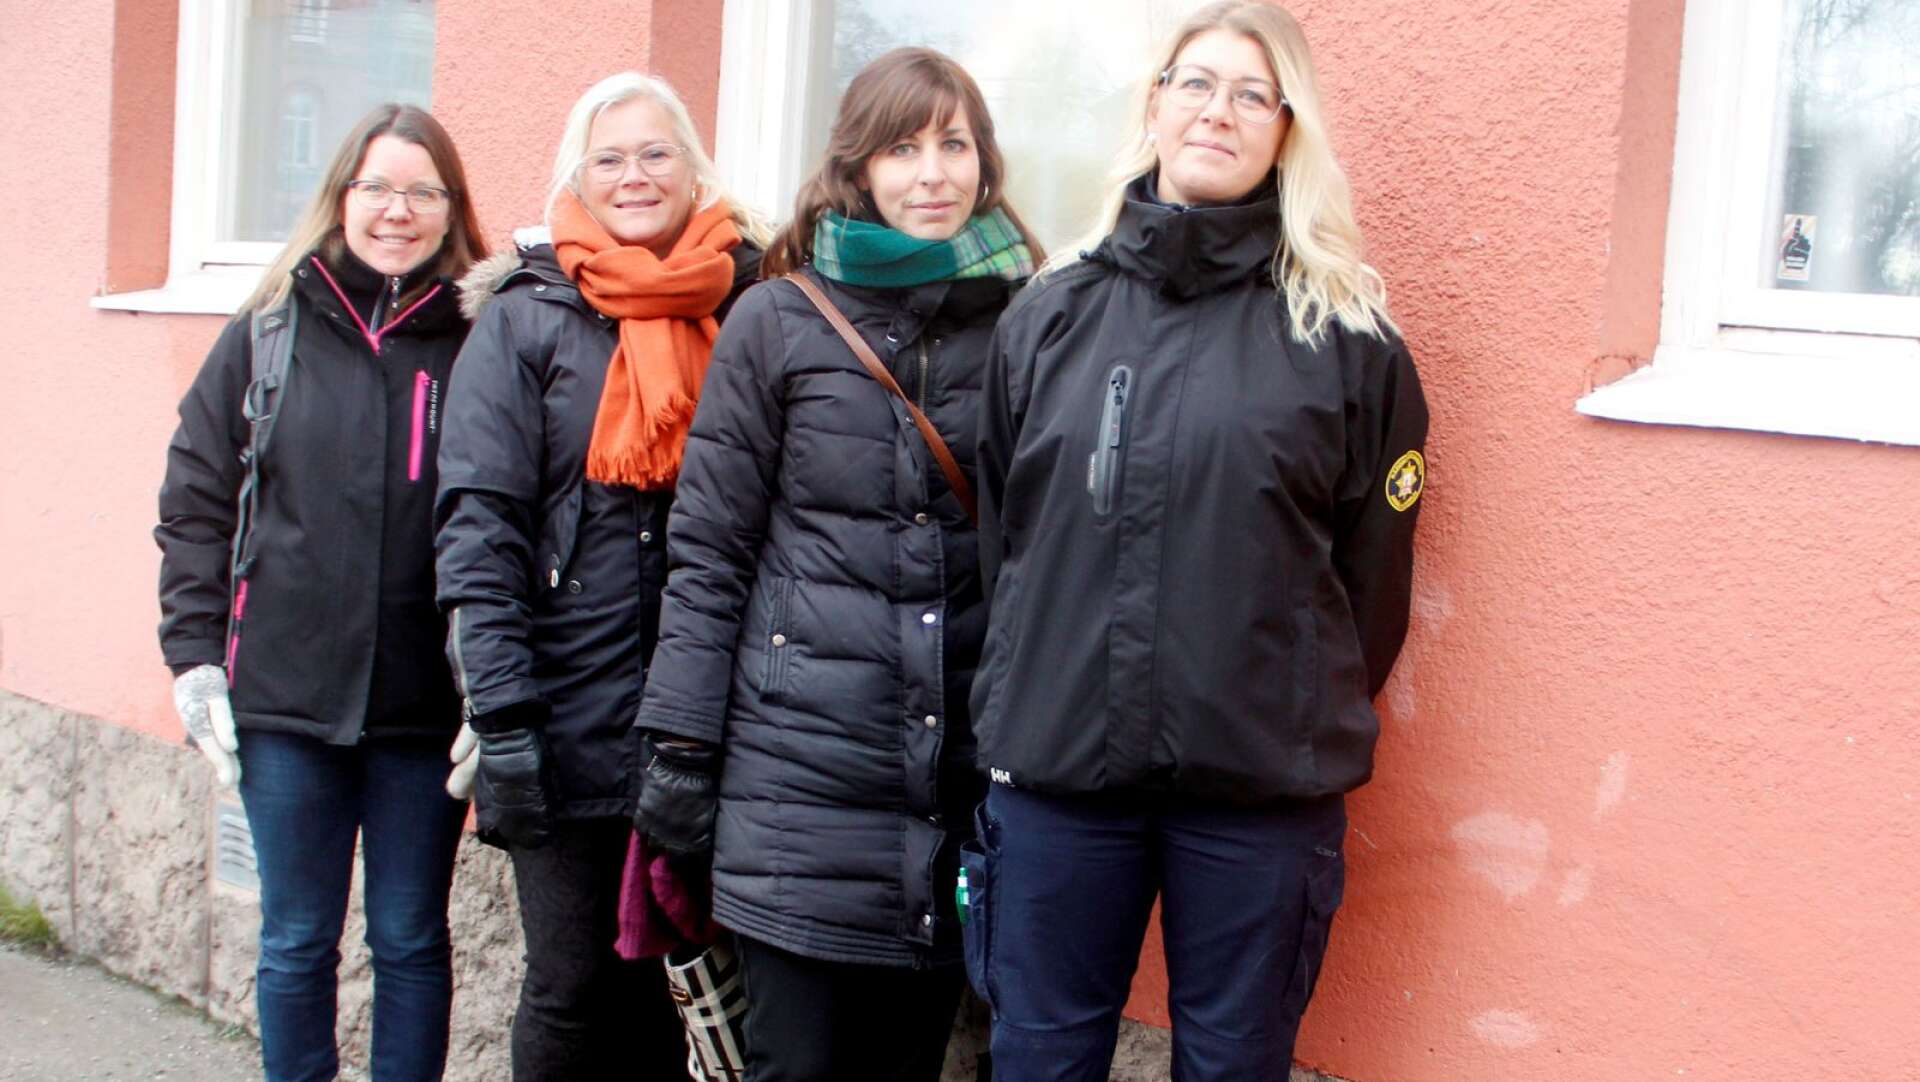 Charlotte Ellénius, kulturskolan, Ulrika Abrahamsson, centrumutvecklare, Anna Hjelmberg, turismutvecklare, och Pernilla Sterner, räddningstjänsten, presenterar ett fylligt program med aktiviteter, utställningar och uppvisningar i centrala Åmål på andra advent.